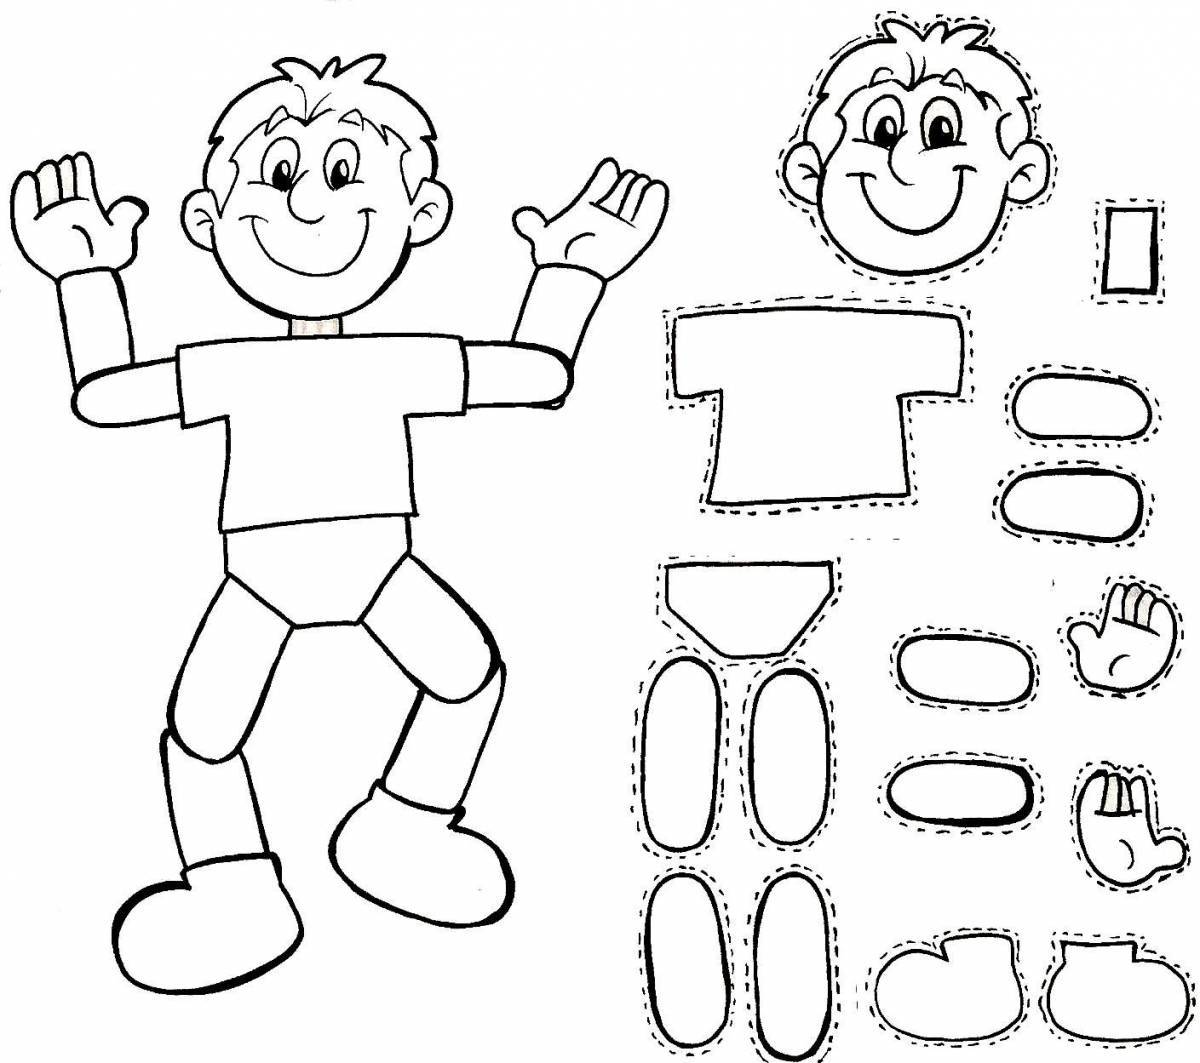 Креативная раскраска частей тела для детей